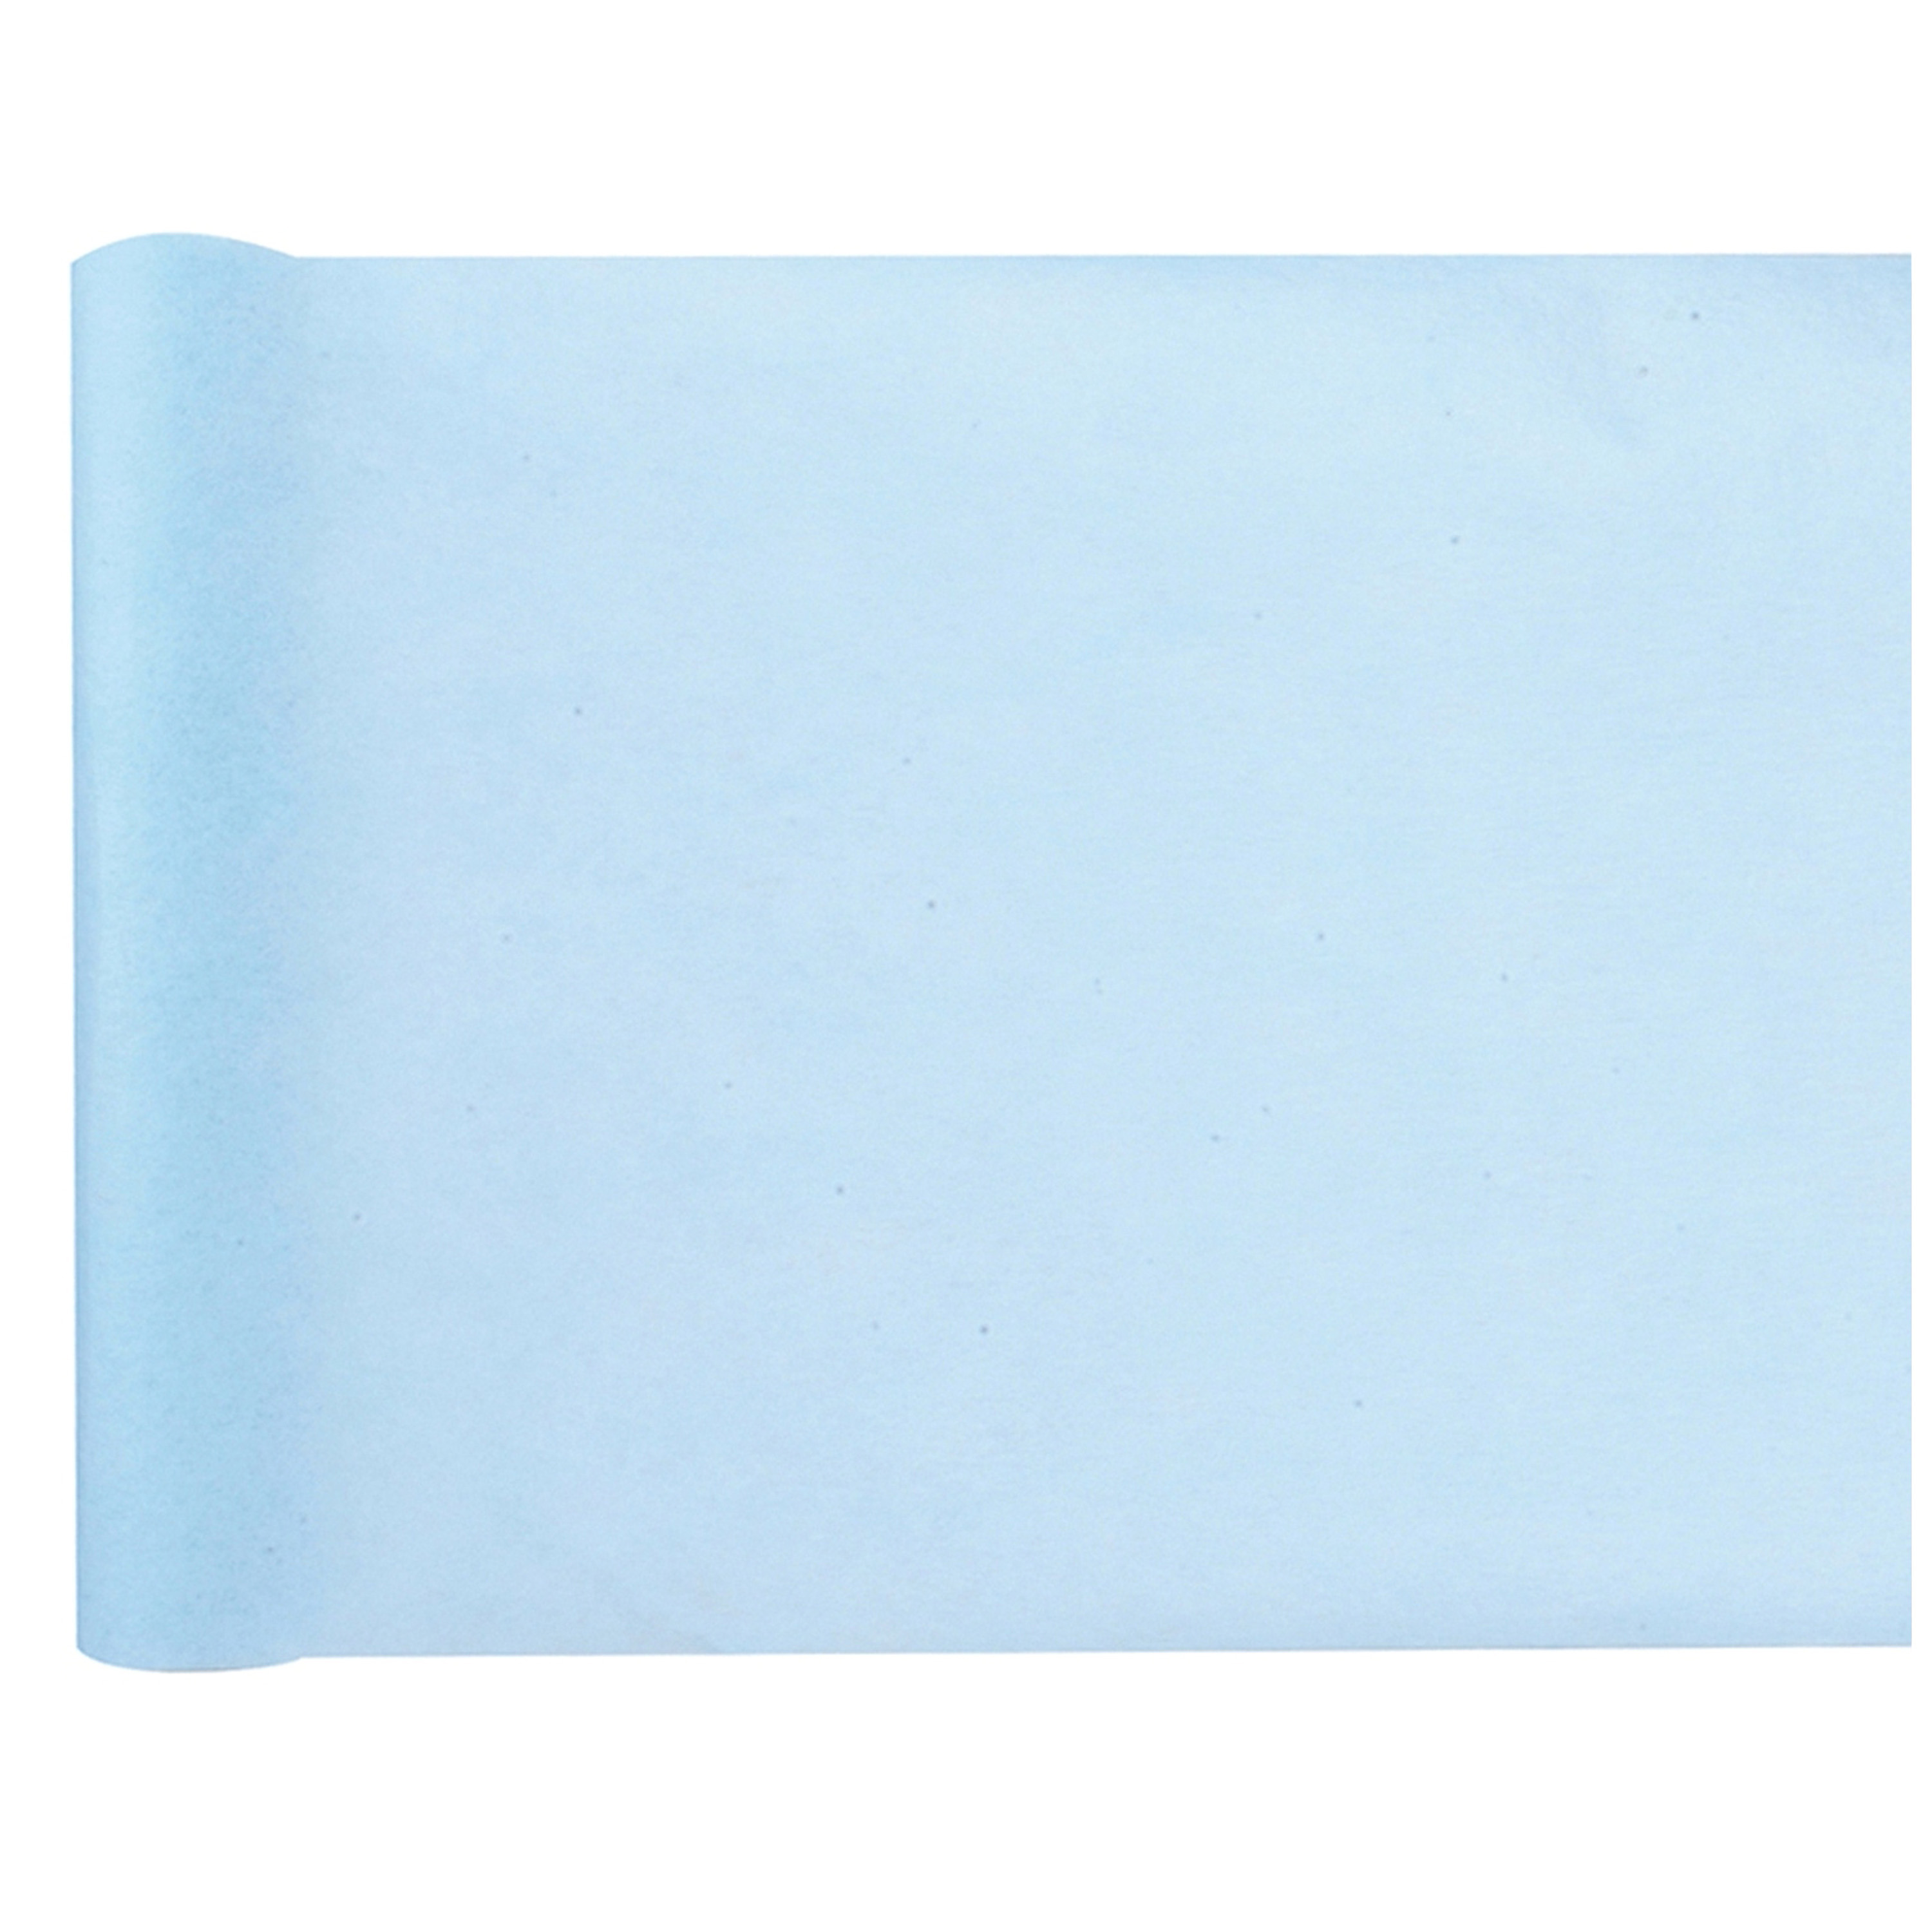 Santex Tischläufer himmelblau, 10mx30cm, aus Vlies für festliche Tischdeko